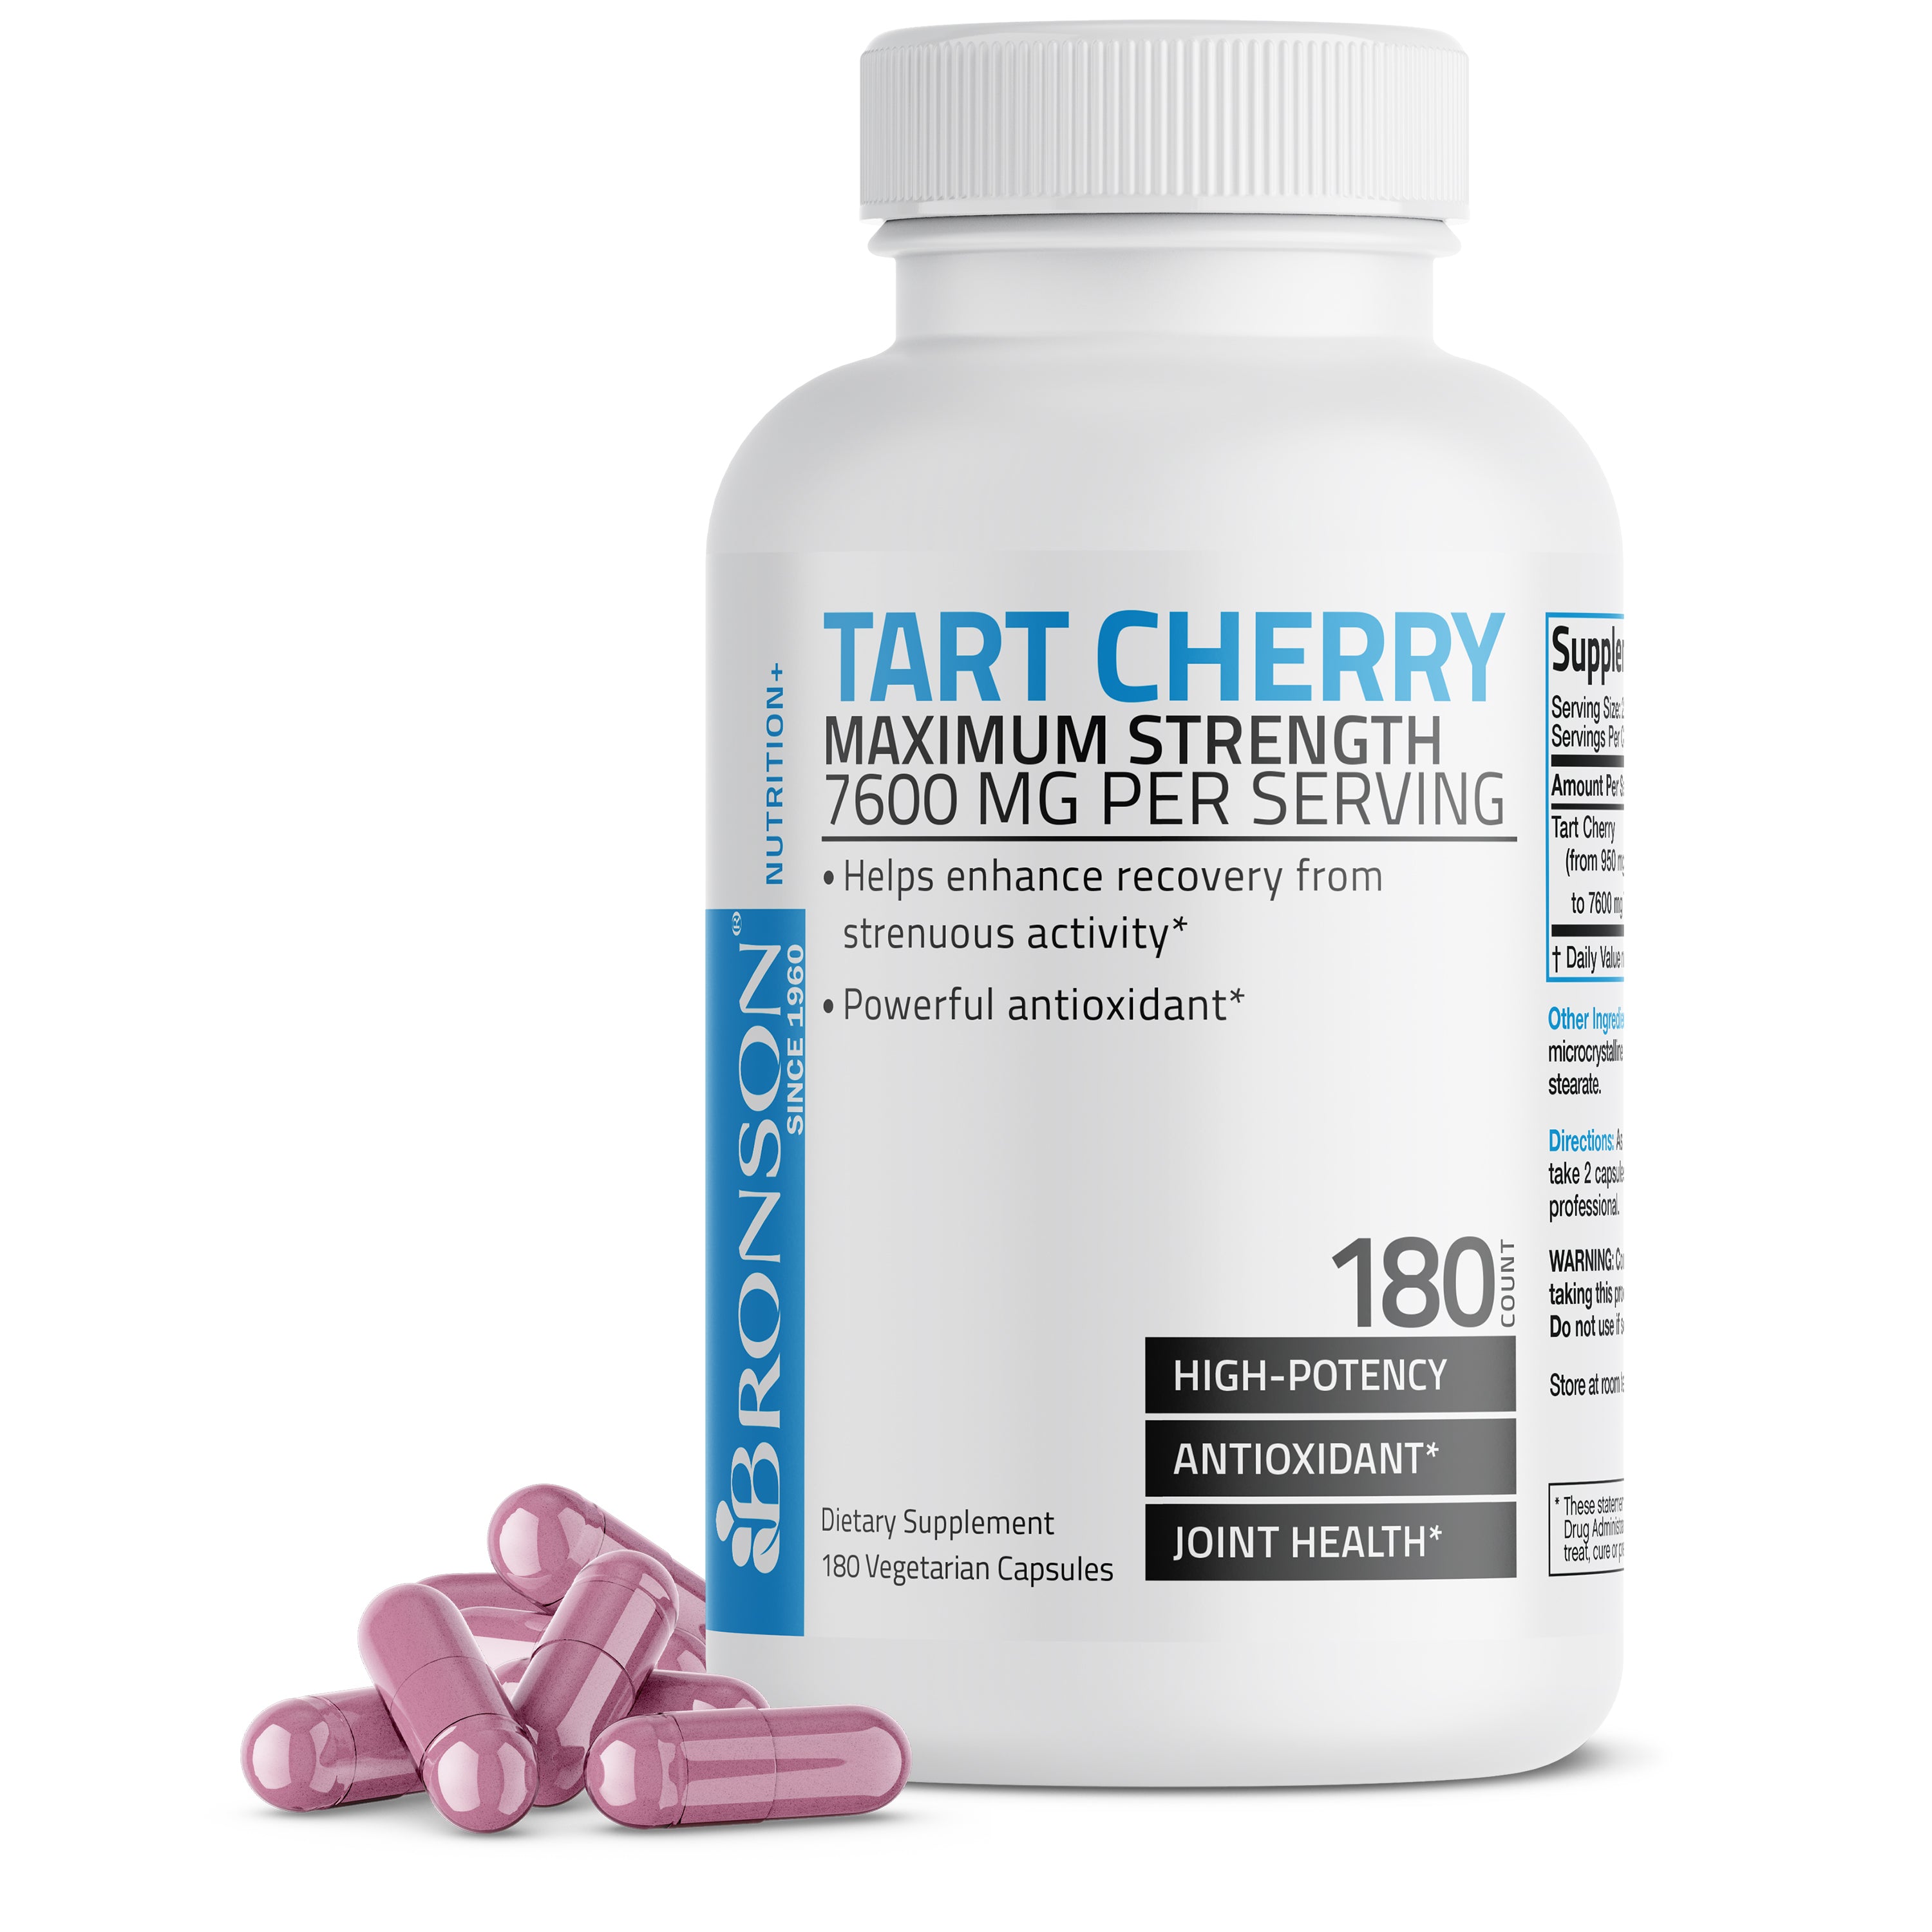 Tart Cherry Extract Maximum Strength - 7,600 MG